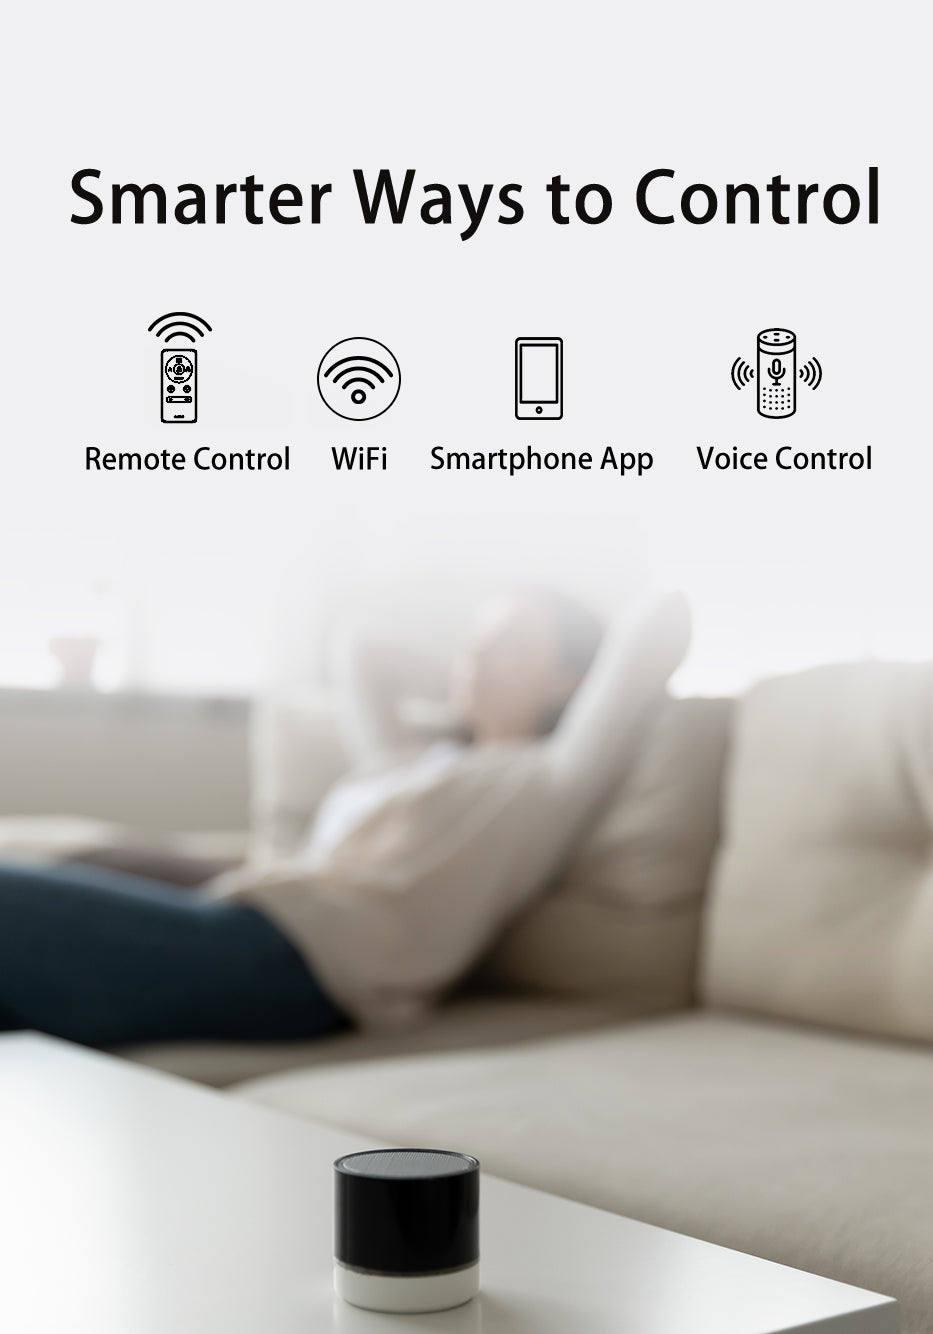 Carro-Smafan-Glacier-52''-Smart-Ceiling-Fan-with-Remote-Smart-Features-Convenient-Control-Voice-Assistant-Wifi-Phone-App1